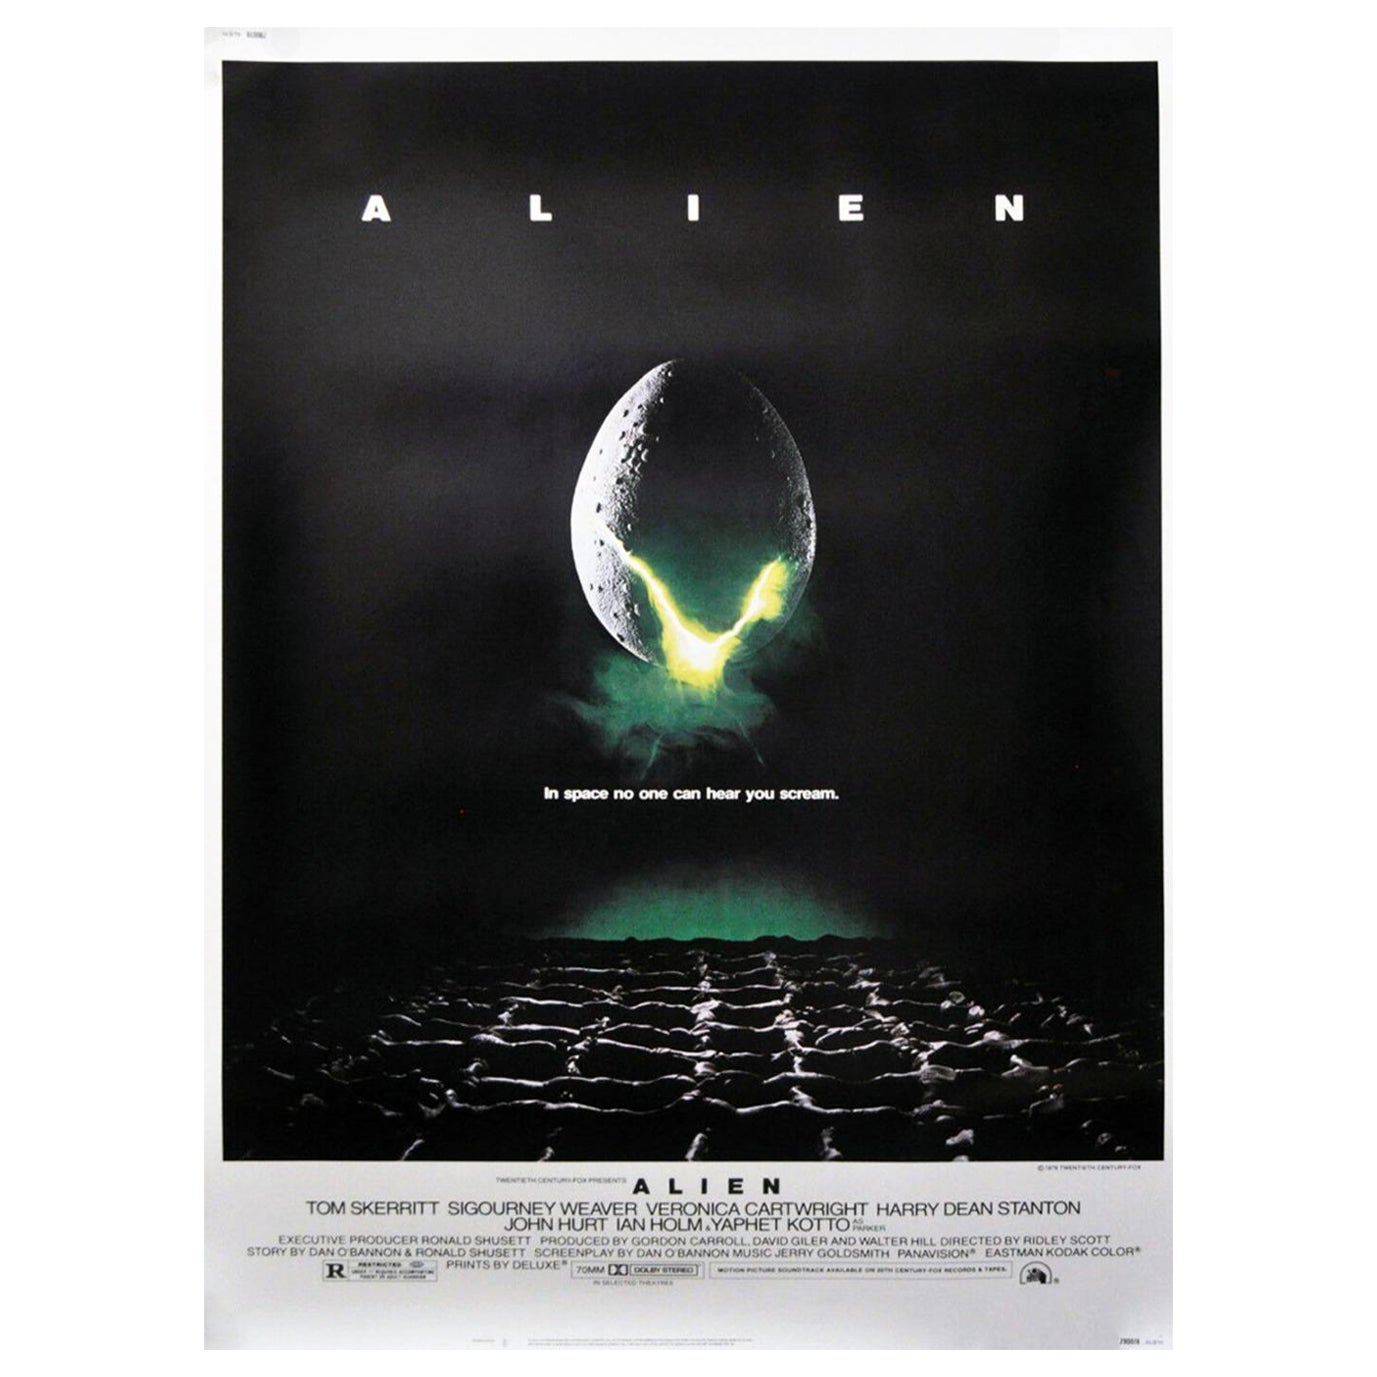 1979 Alien Original Vintage Poster